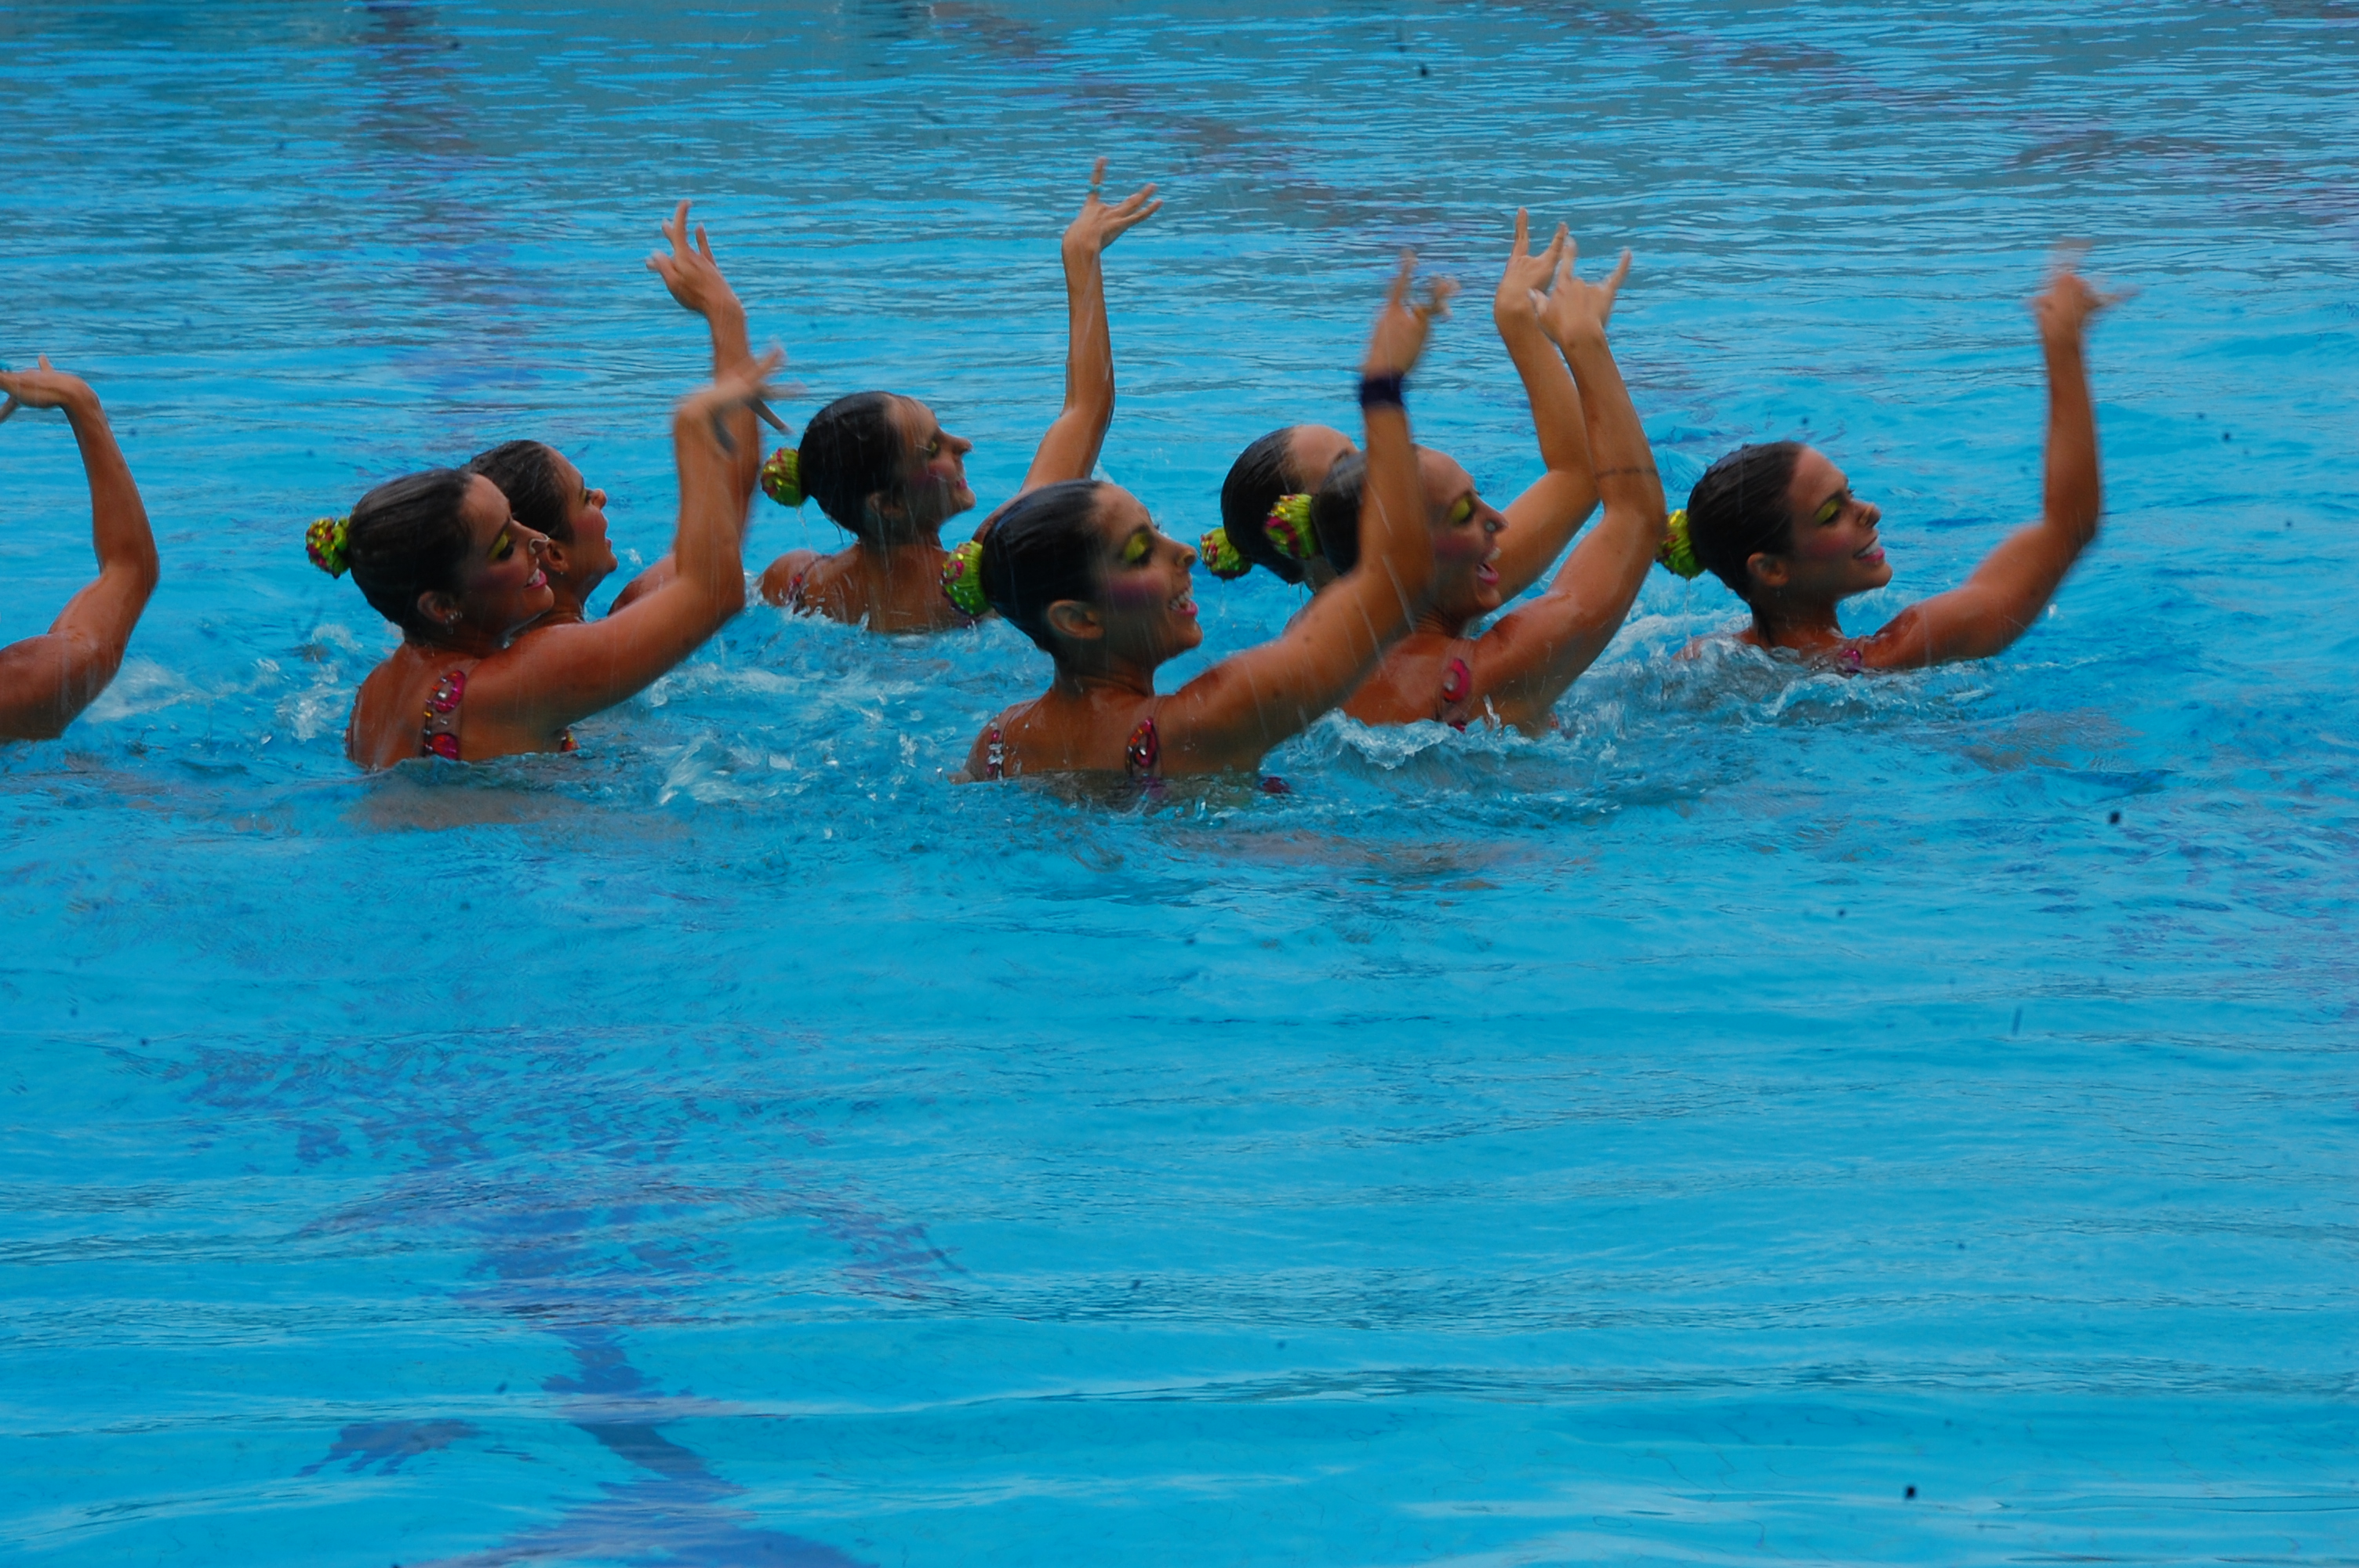 Sincronismo olímpico brasileiro faz esquente em piscina soteropolitana